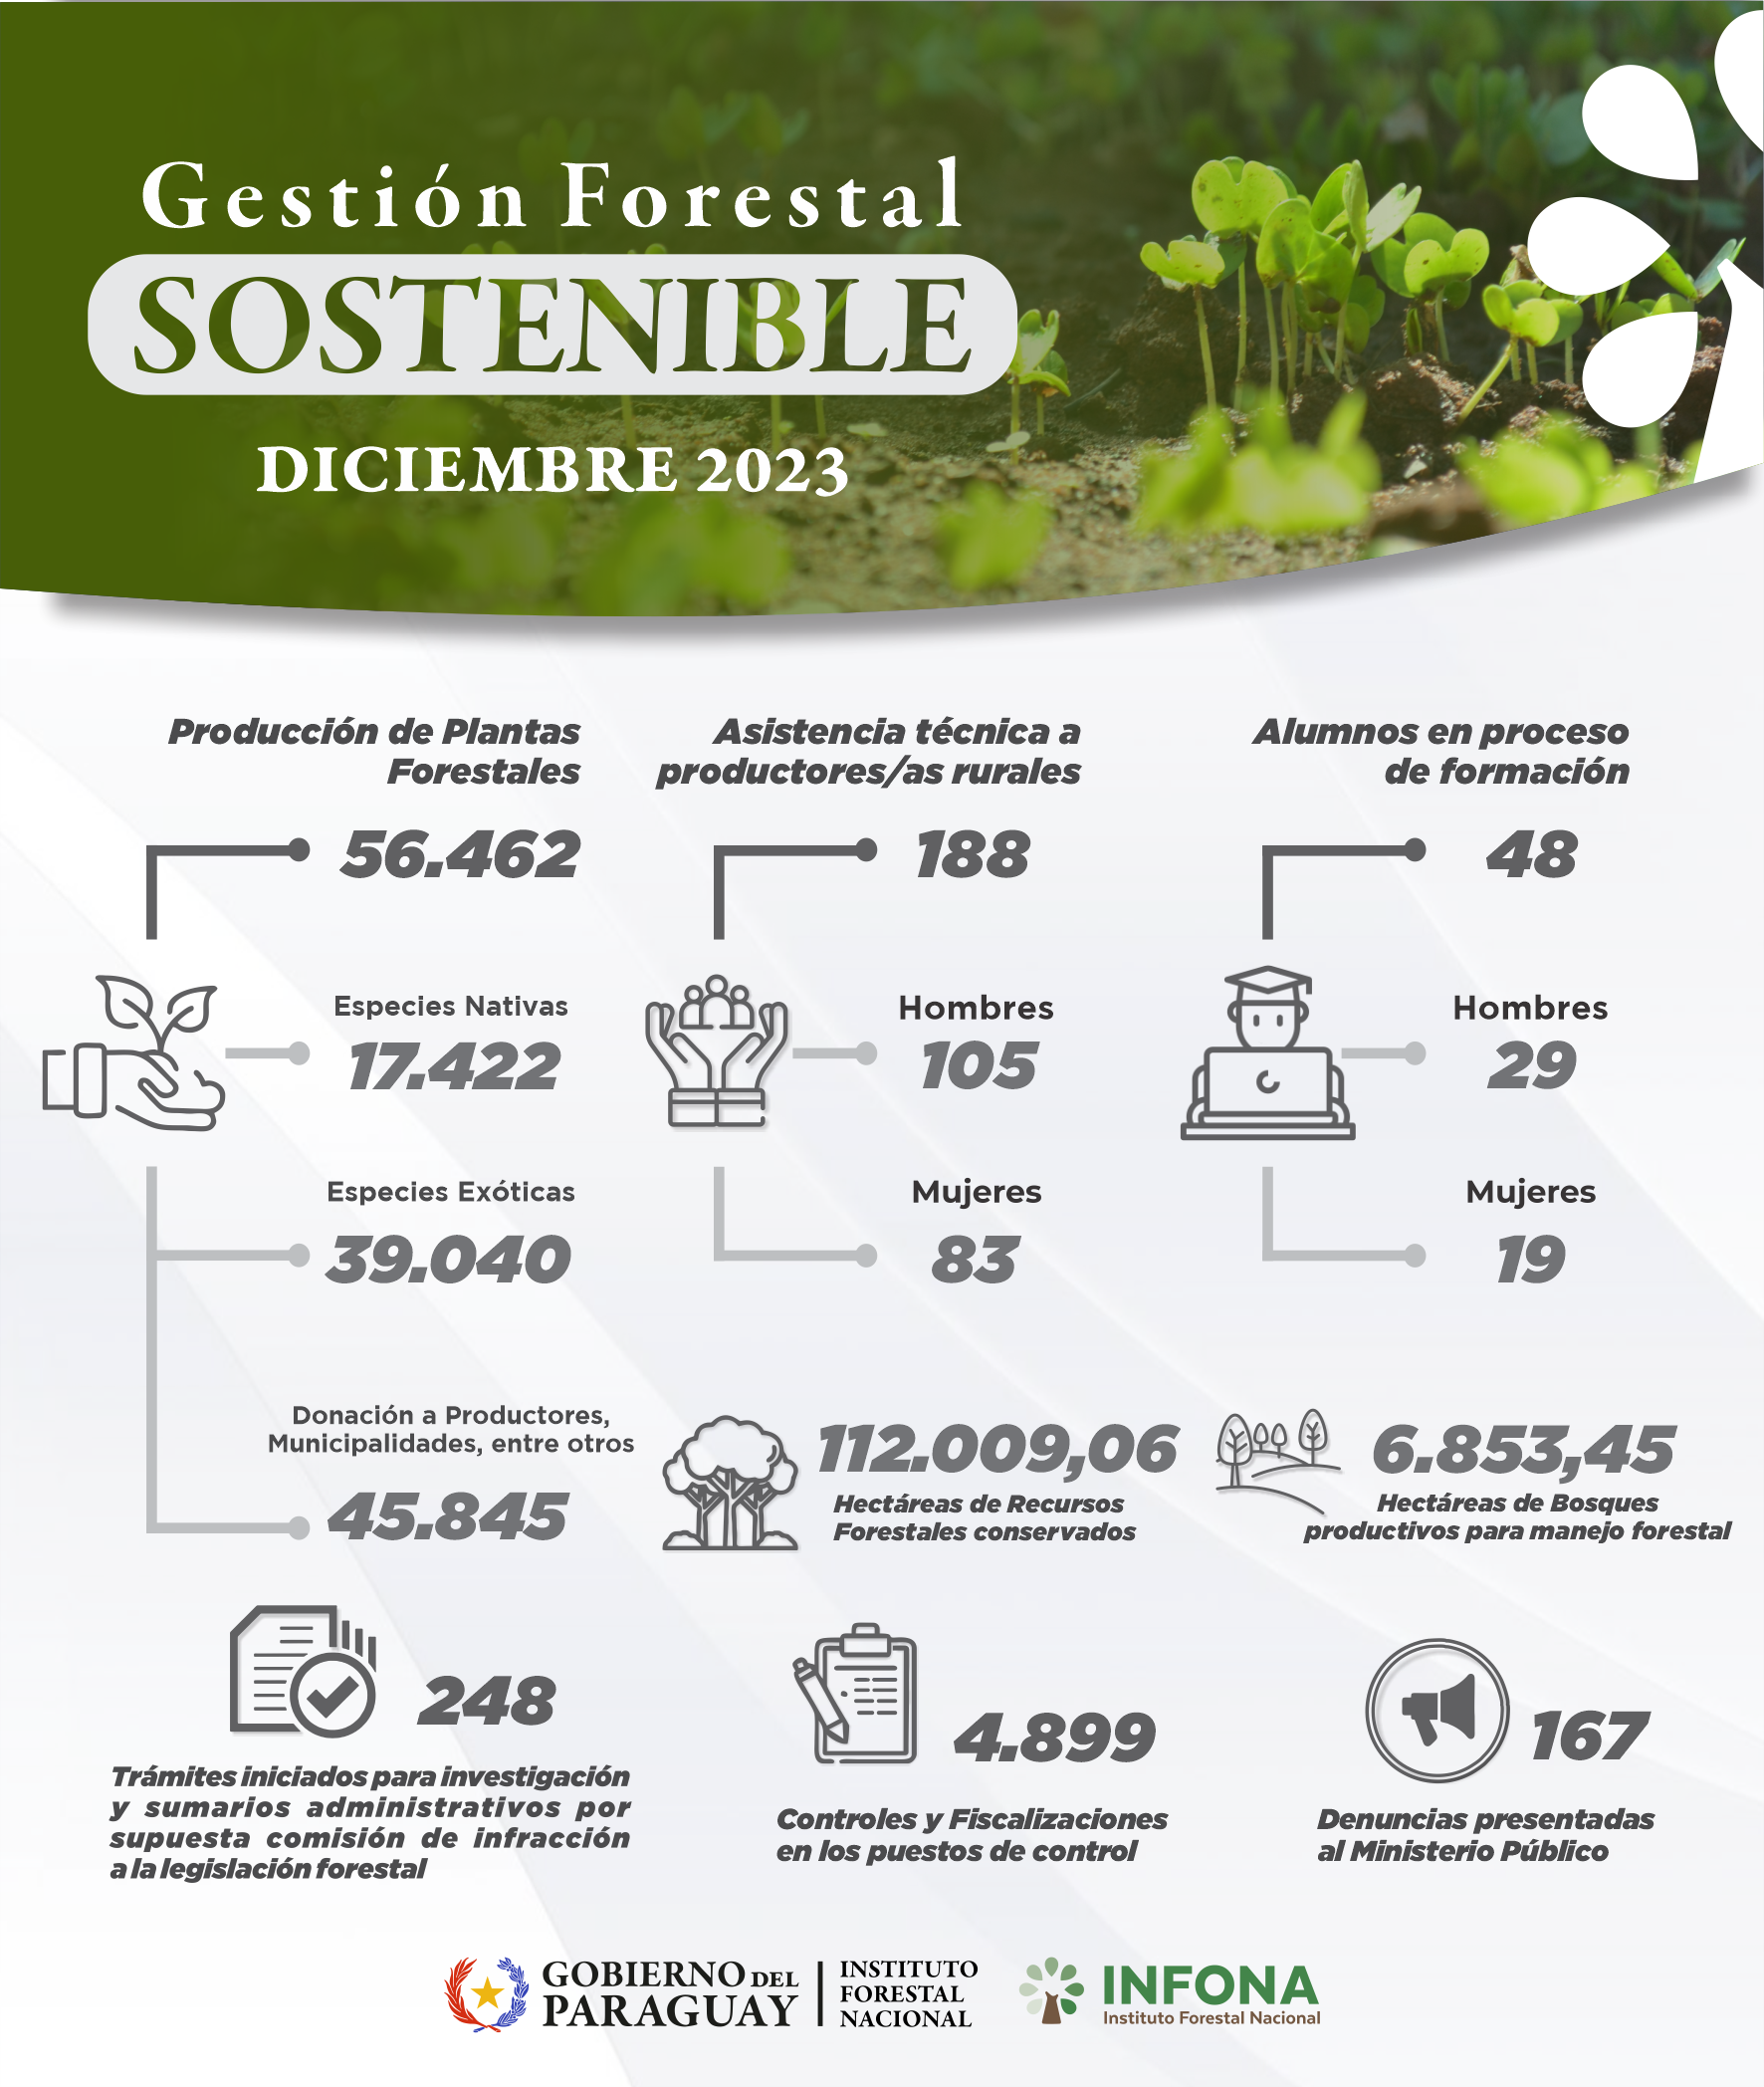 gestion sostenible mes de diciembre